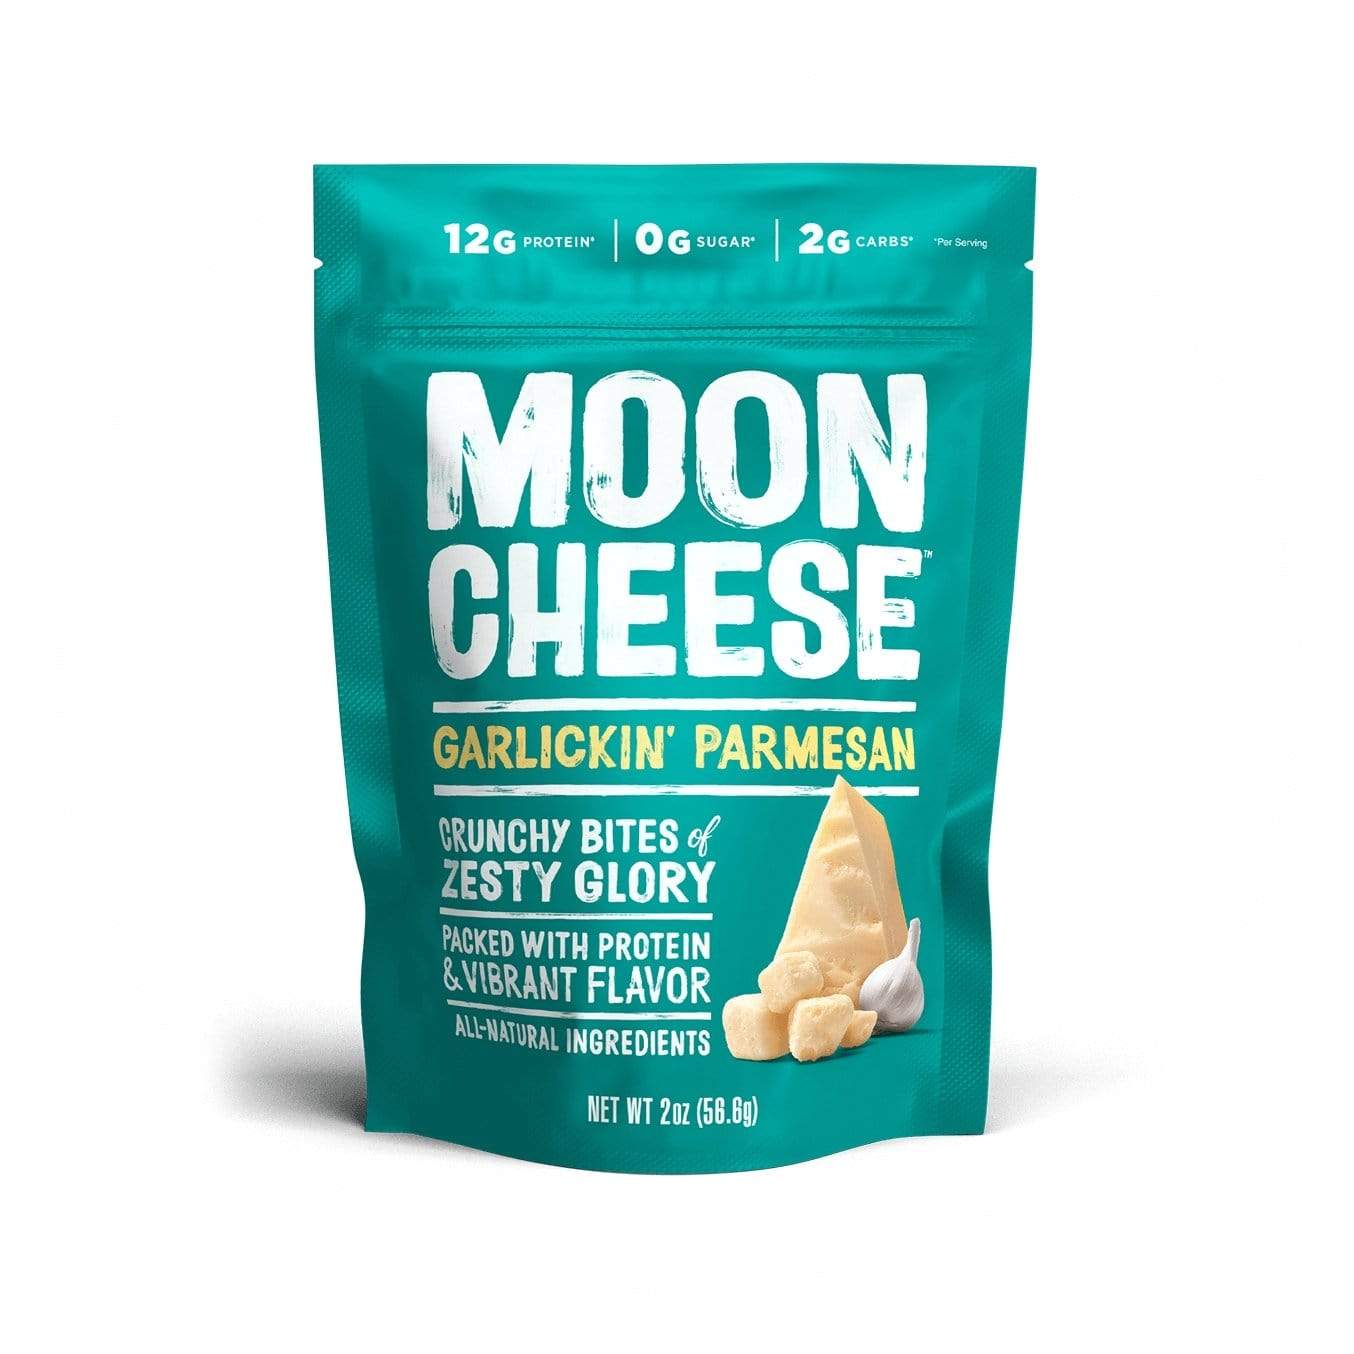 [Moon Cheese] Garlickin' Parmesan I 1oz or 2 oz bags exclusive at